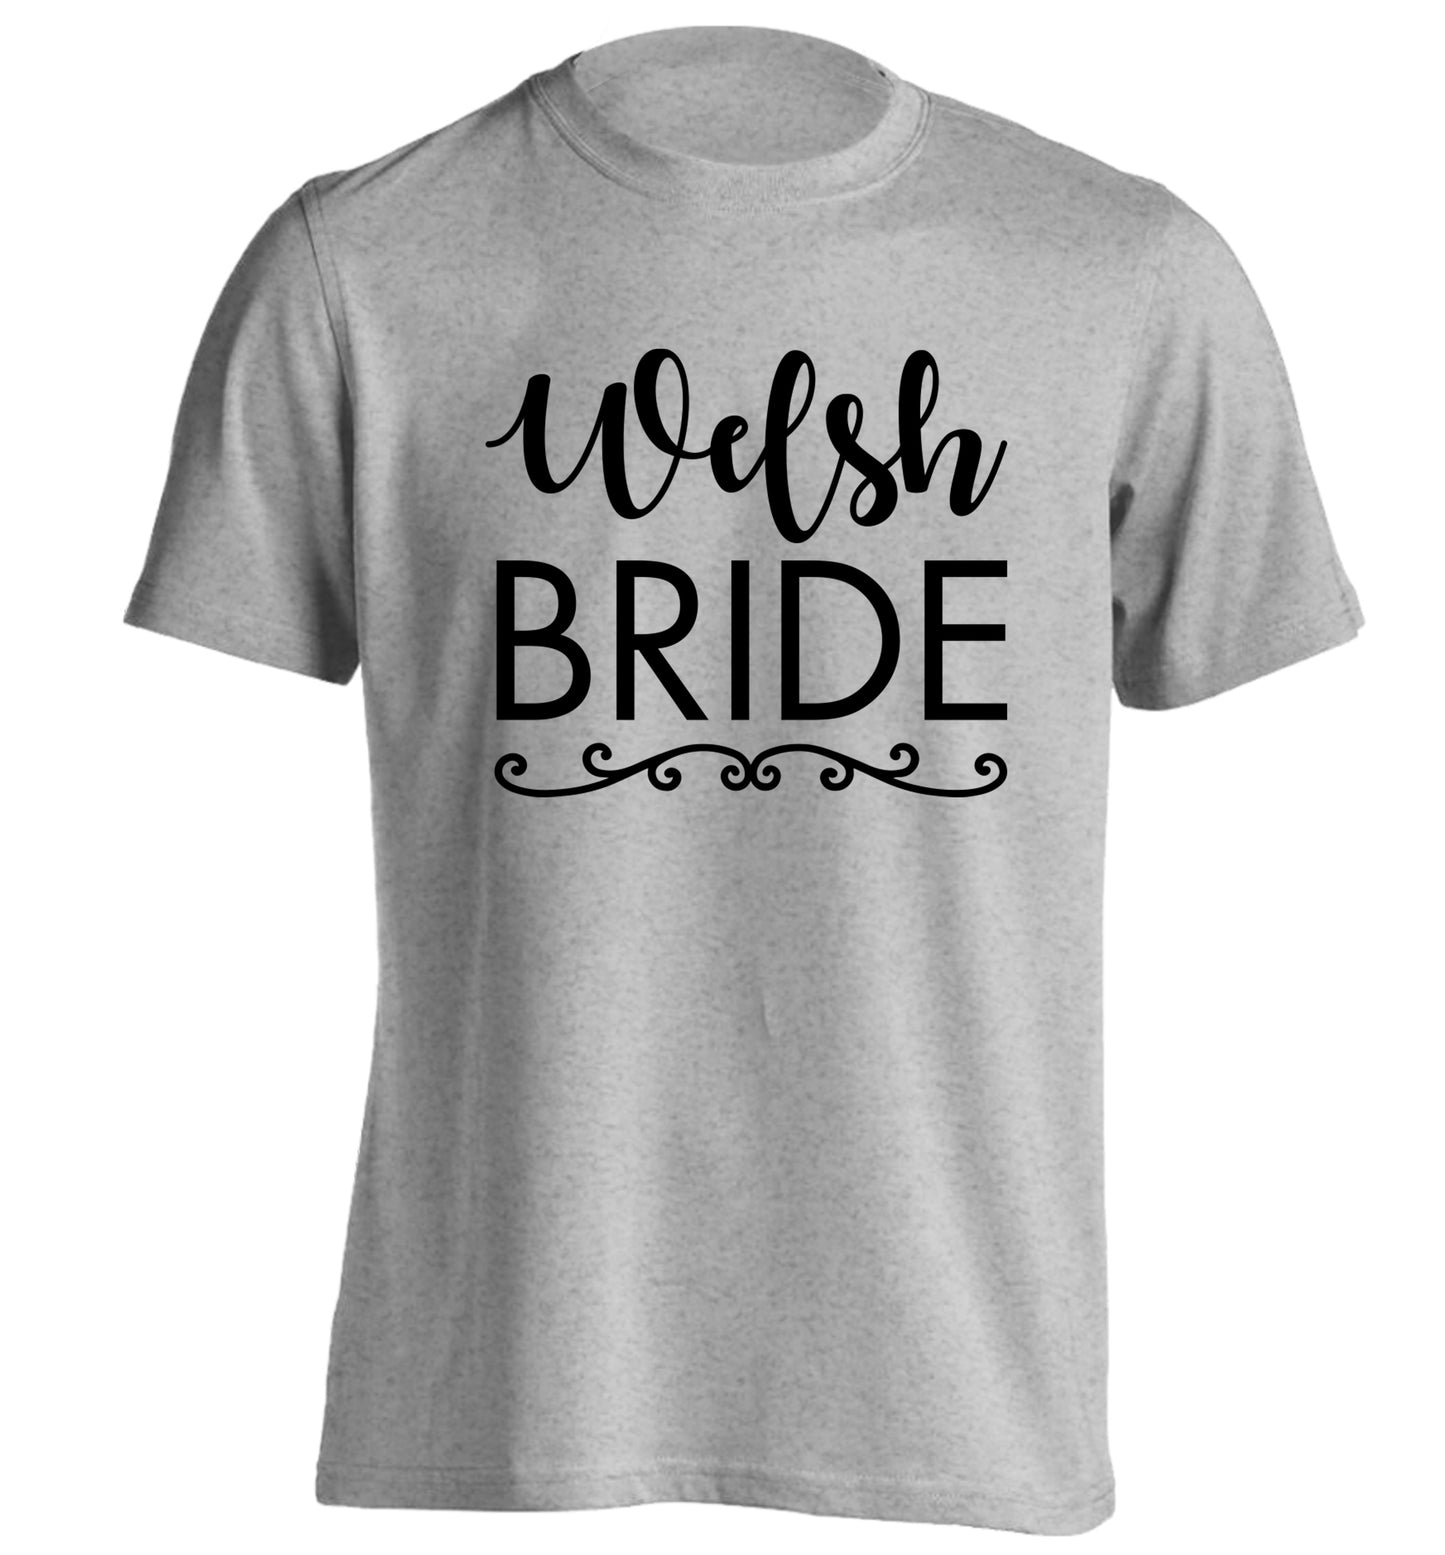 Welsh Bride adults unisex grey Tshirt 2XL